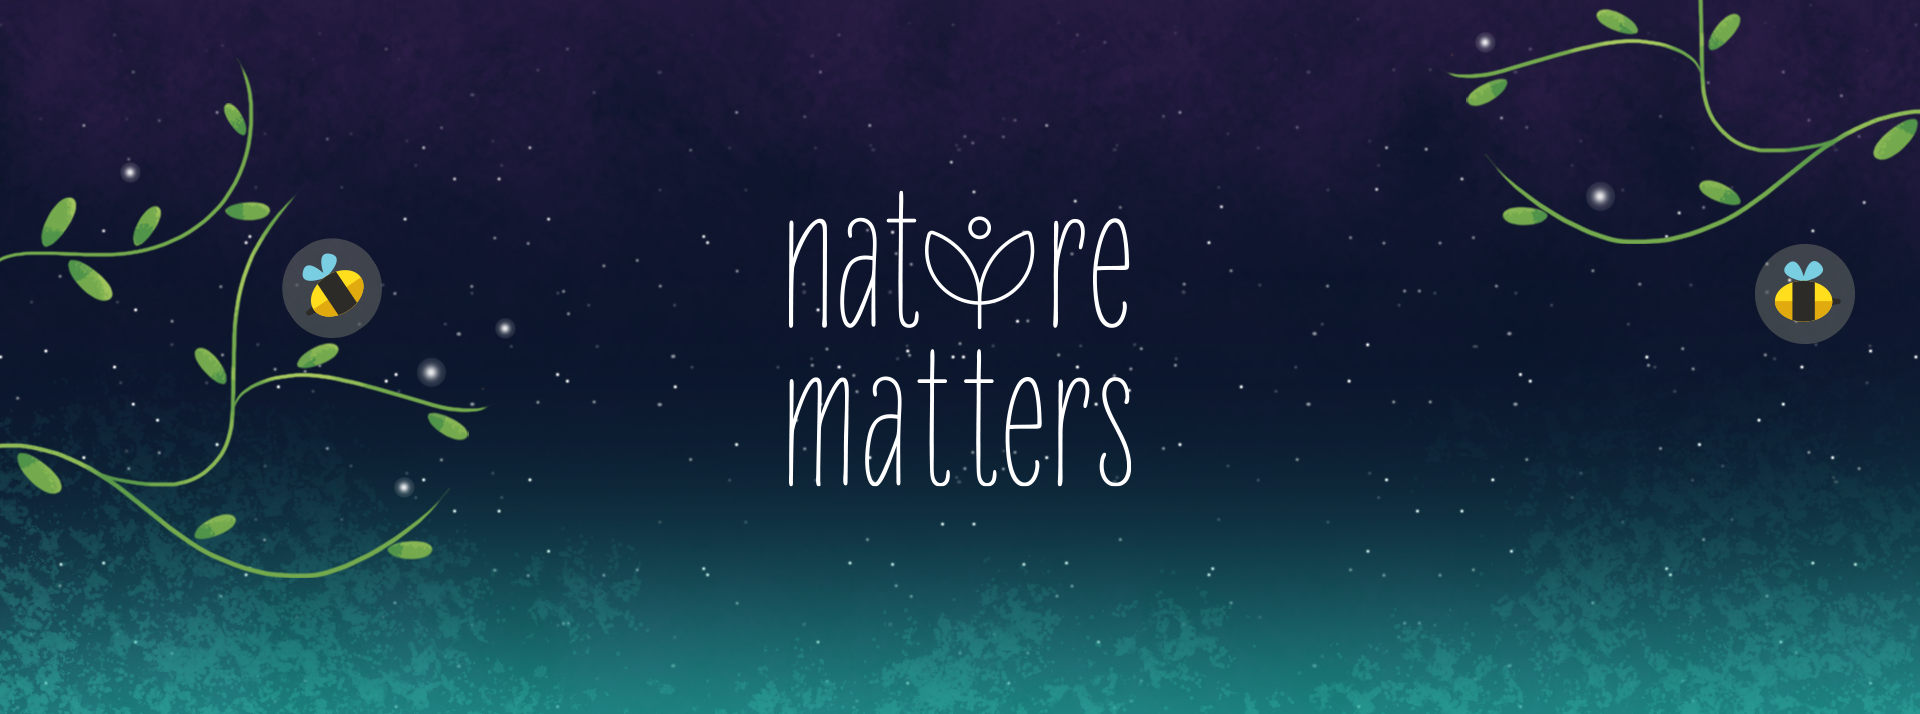 Nature Matters